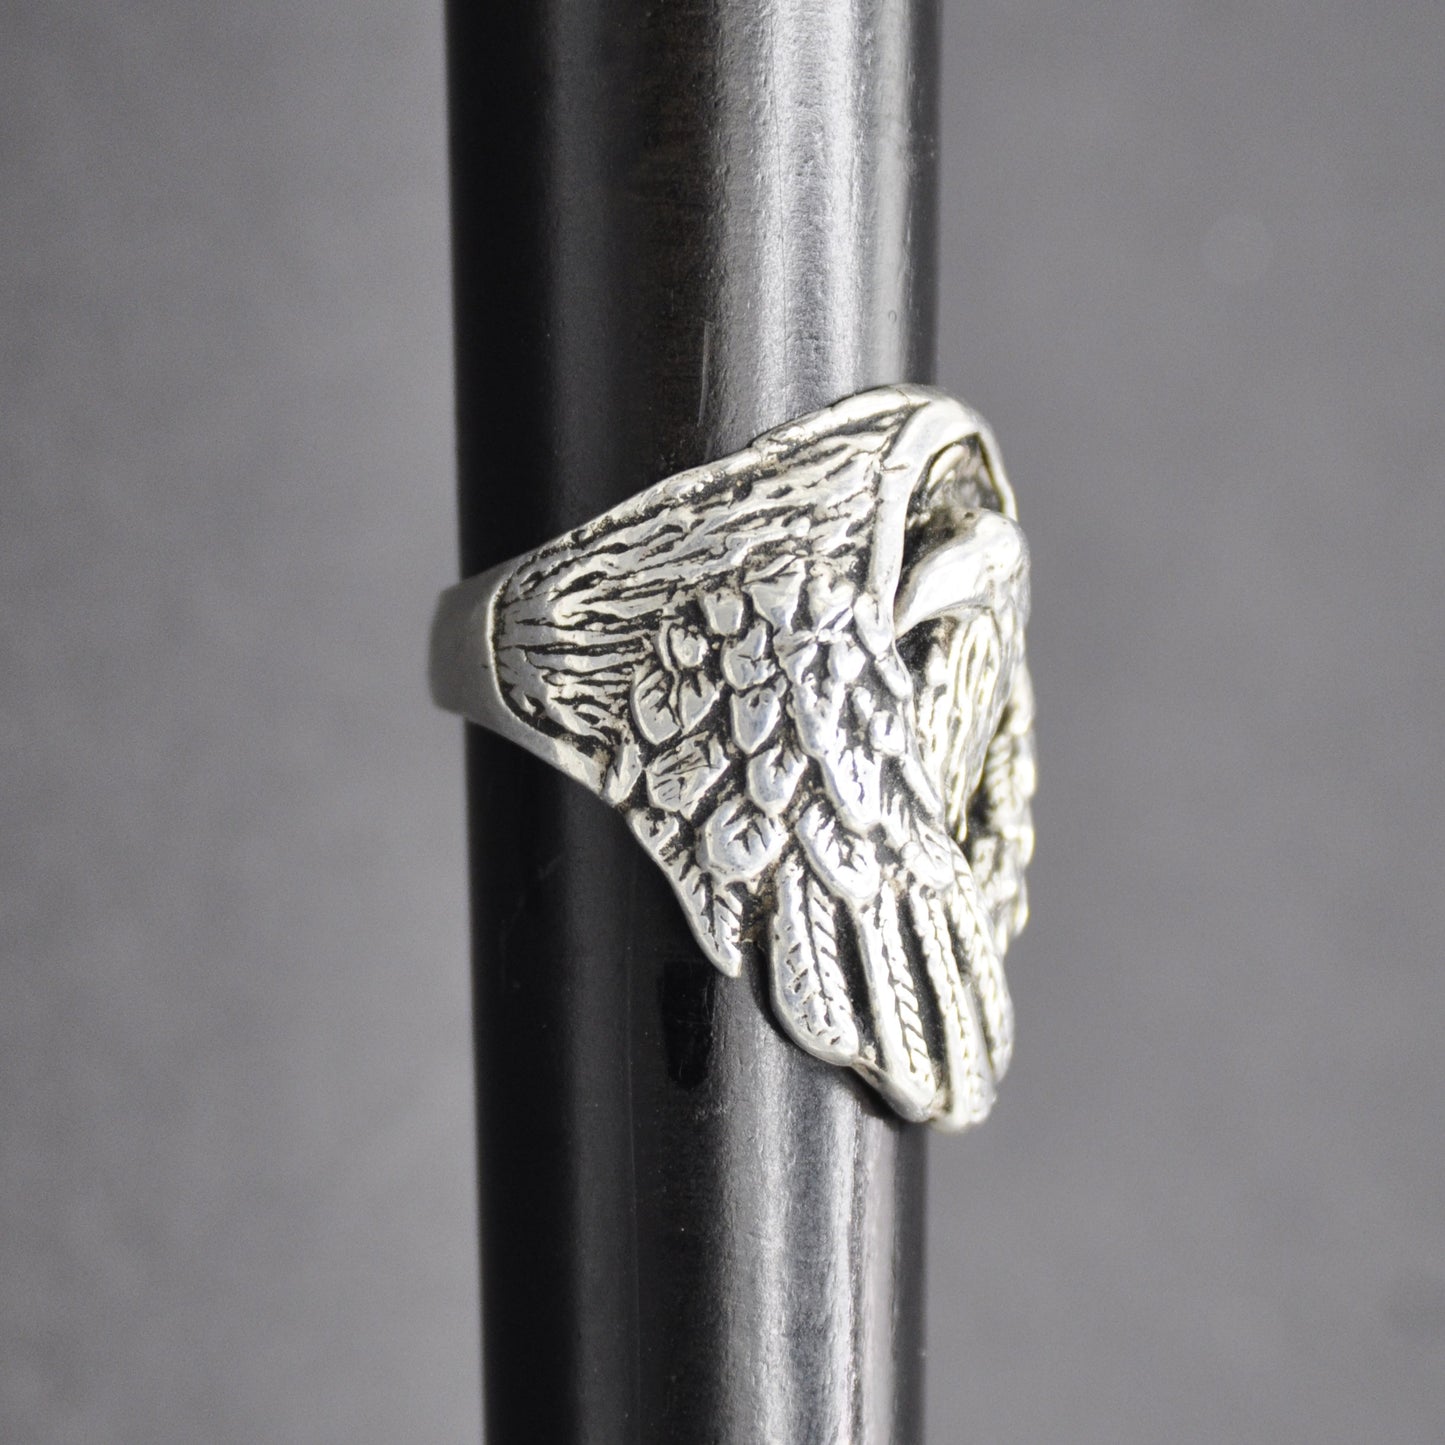 Eagle Head Ring, Sterling Silver Eagle, Endangered Species, Eagle Spirit Ring Size 9-12